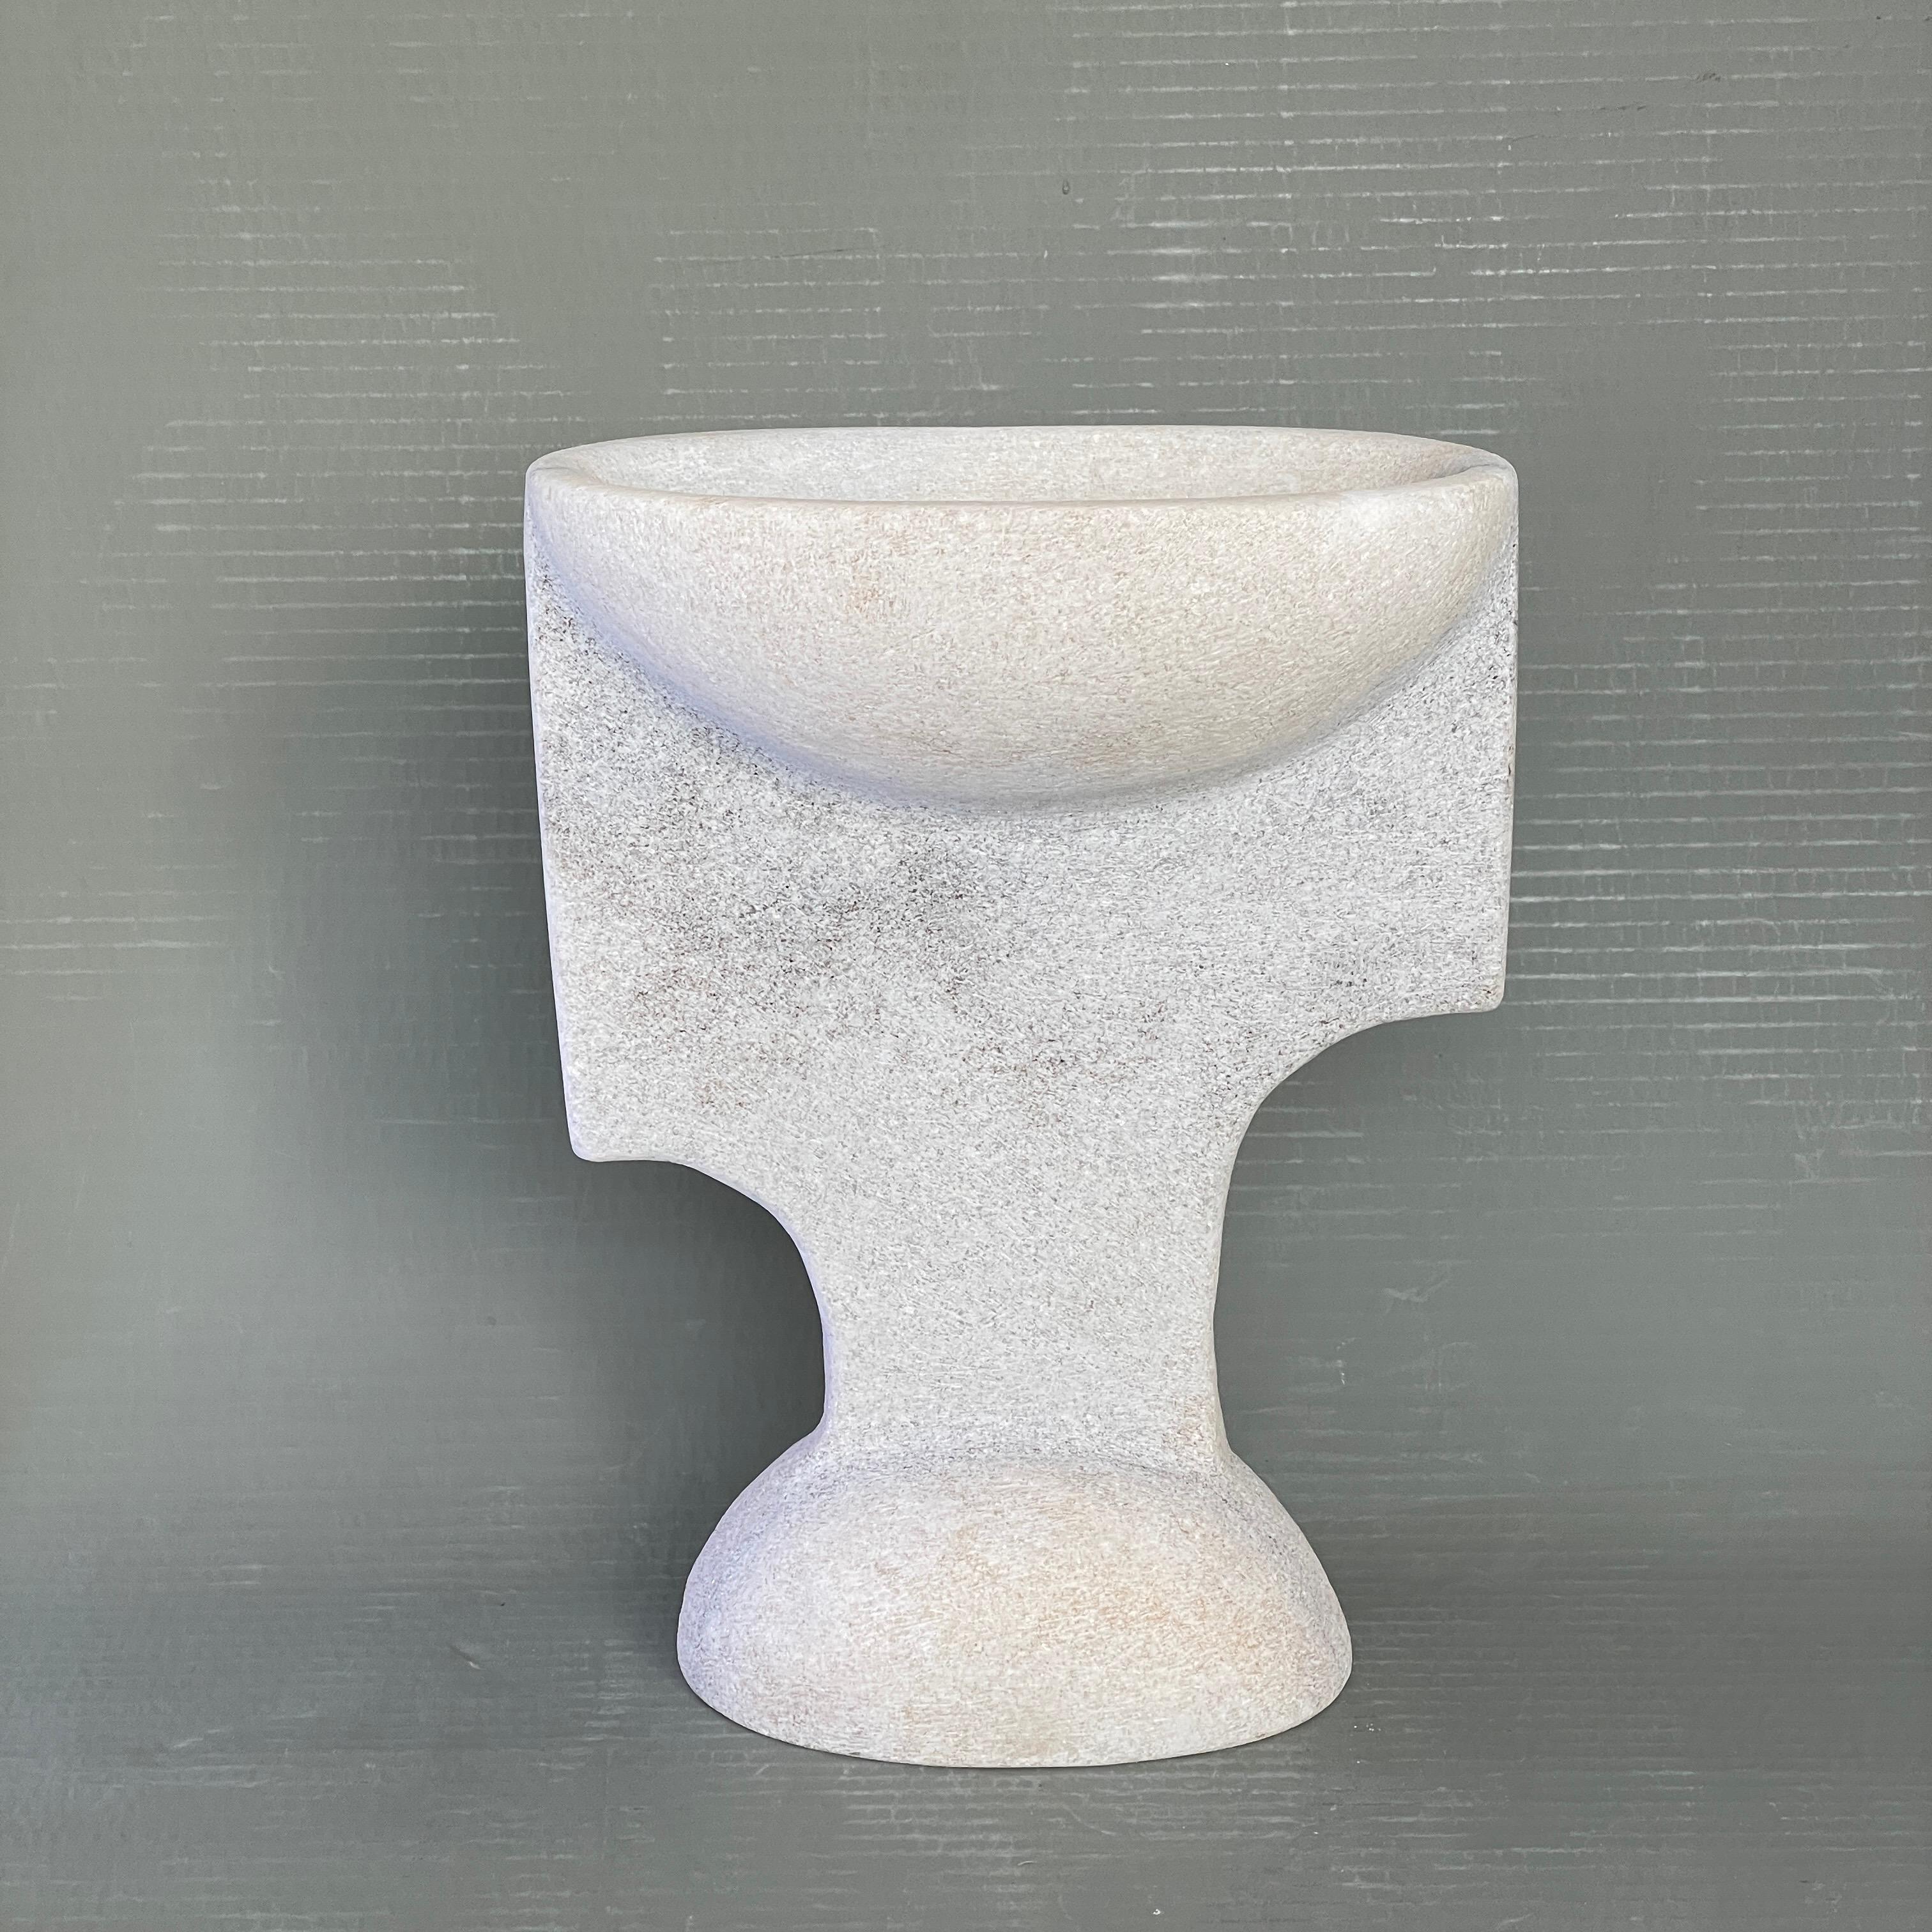 Vase en marbre sculpté à la main par Tom Von Kaenel
Matériaux : Marbre
Dimensions : L 11 x P 20 x H 26 cm

Tom von Kaenel, sculpteur et peintre, est né en Suisse en 1961. Déjà au début de sa vie
Enfant, il était profondément dévoué à l'art. Son